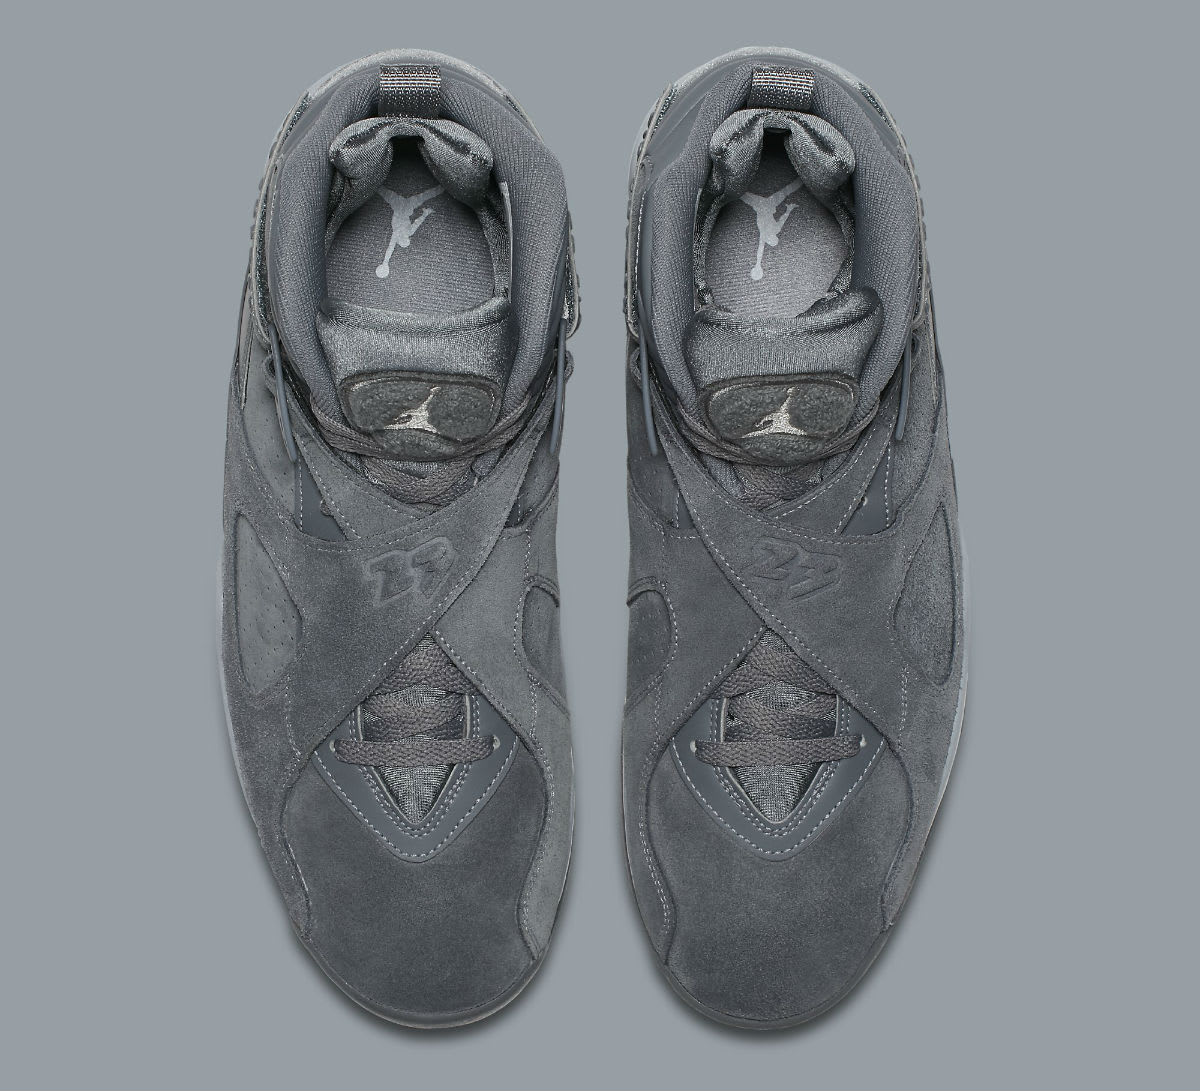 Air Jordan 8 VIII Cool Grey Release Date Top 305381-014